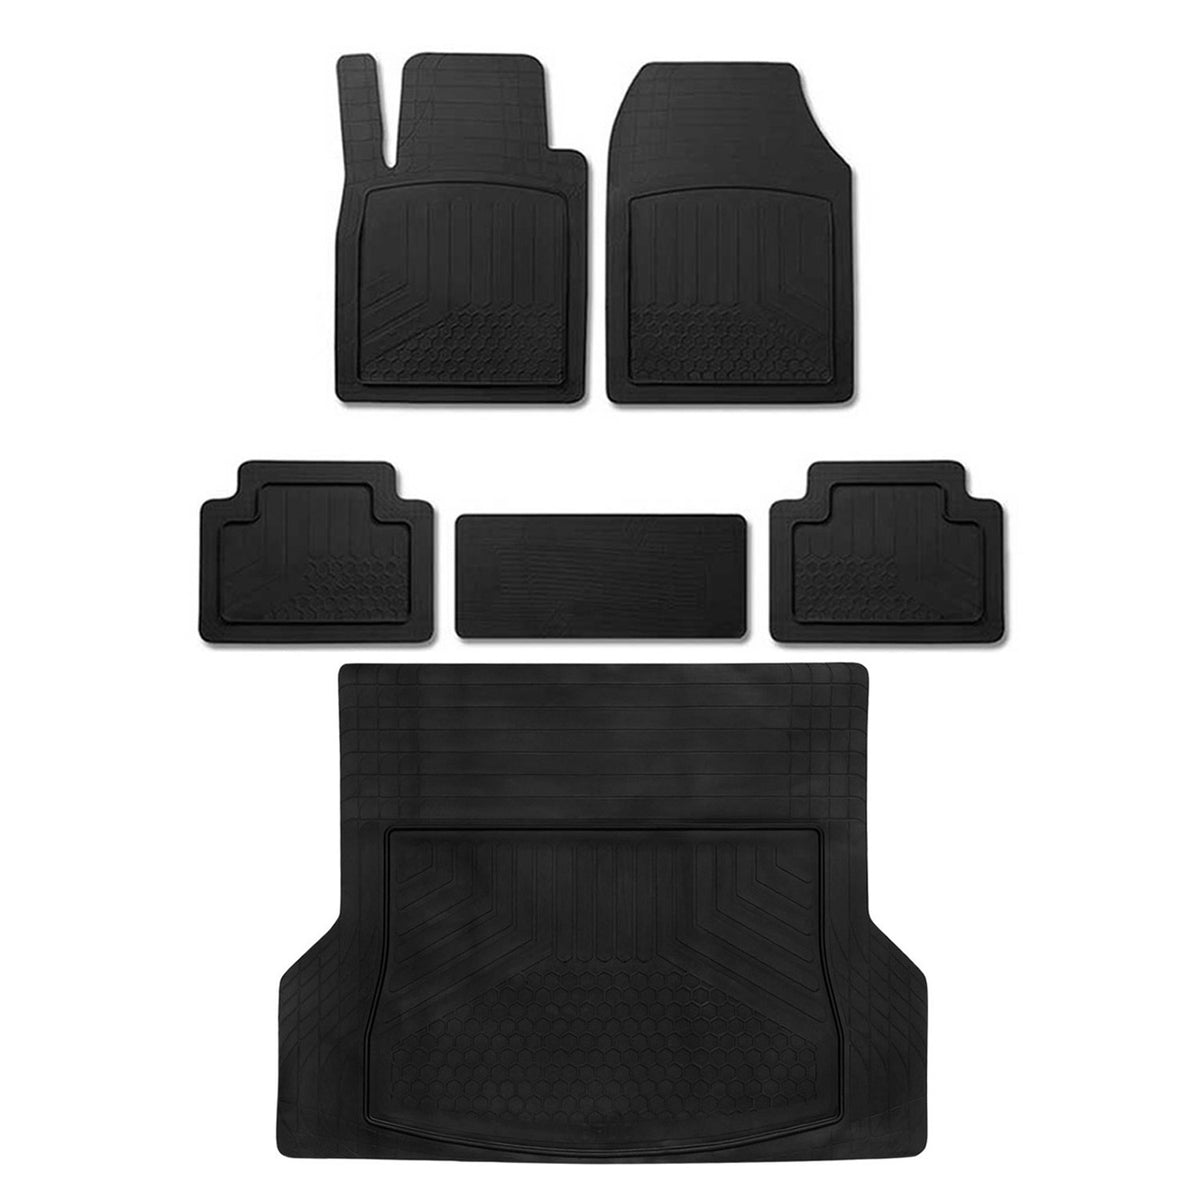 Fußmatten & Kofferraumwanne Set für Ford Focus Antirutsch Gummi Schwarz